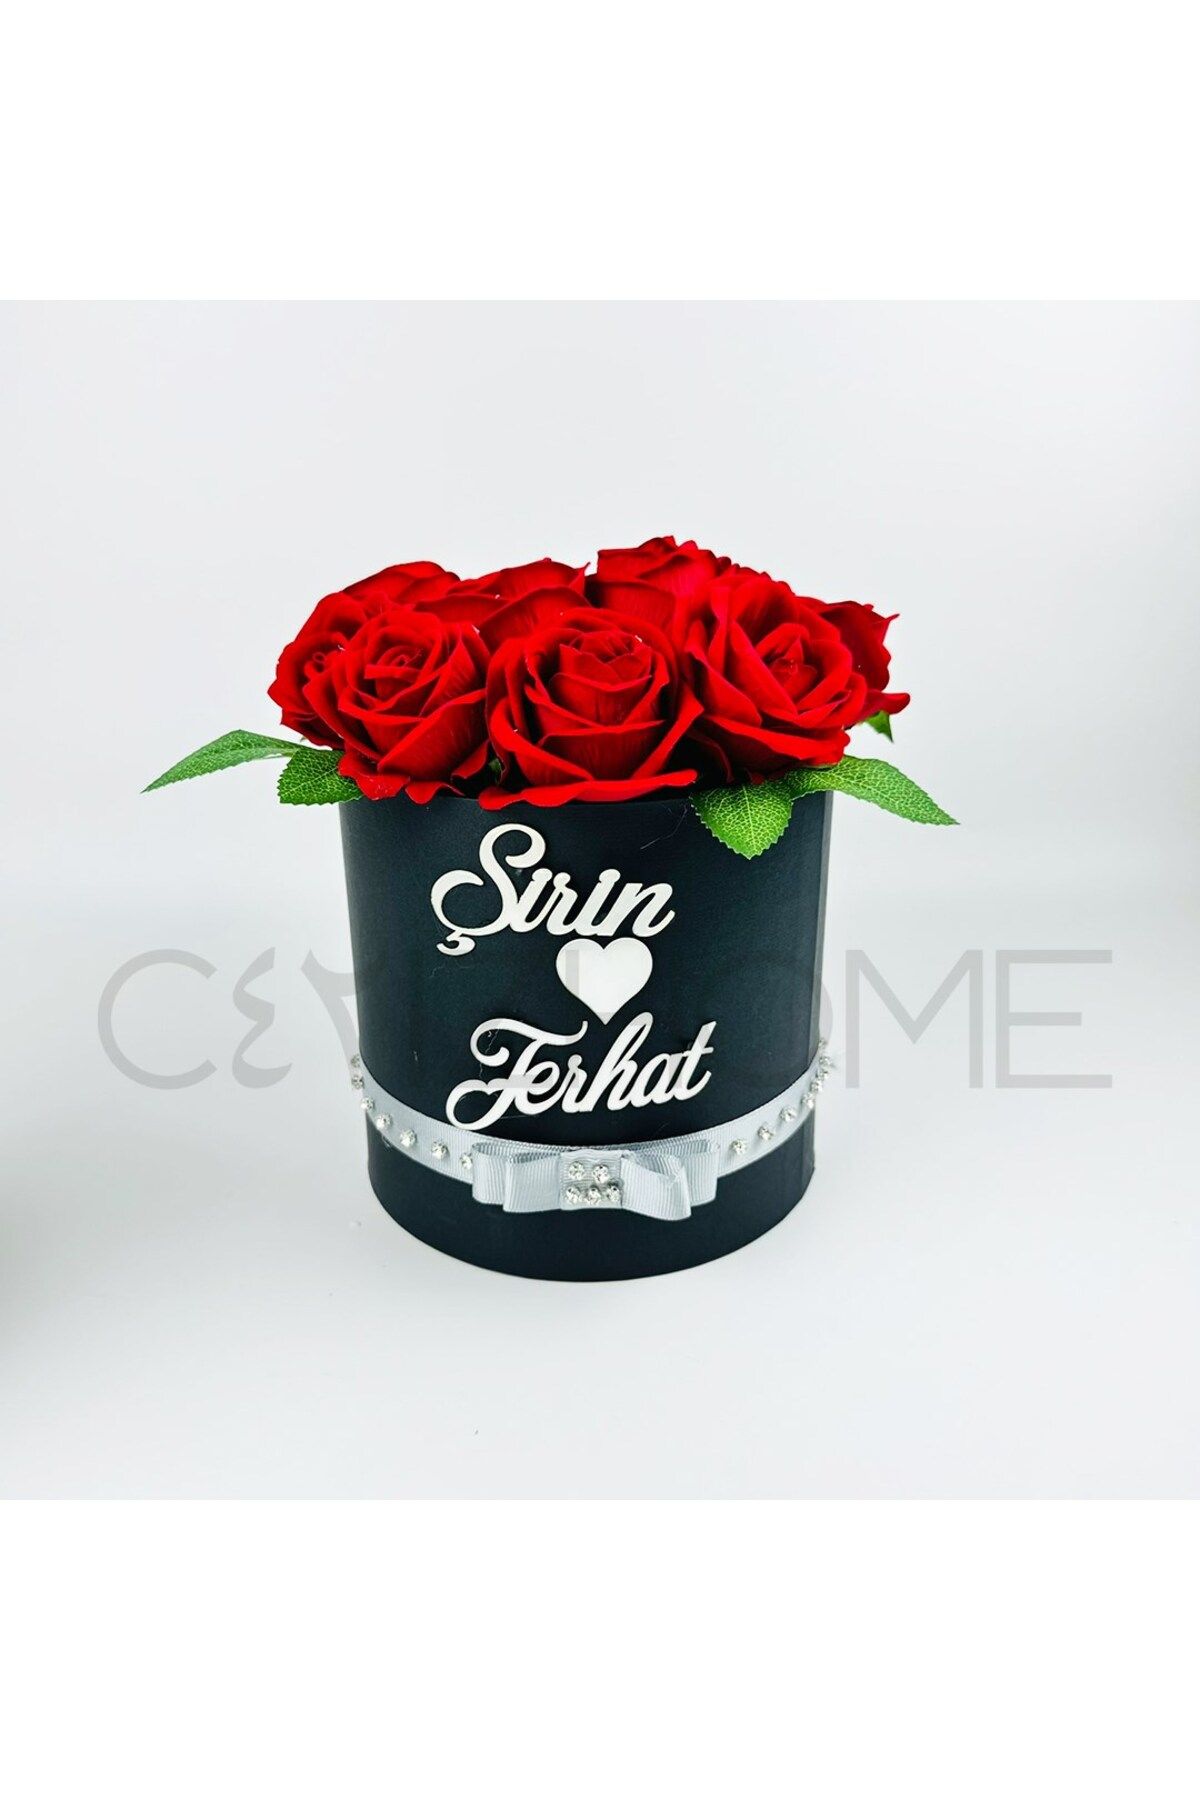 CyzHome Söz Nişan Çiçek, Kız İsteme Kırmızı Kadife Gül Detaylı Siyah Yuvarlak Kutu